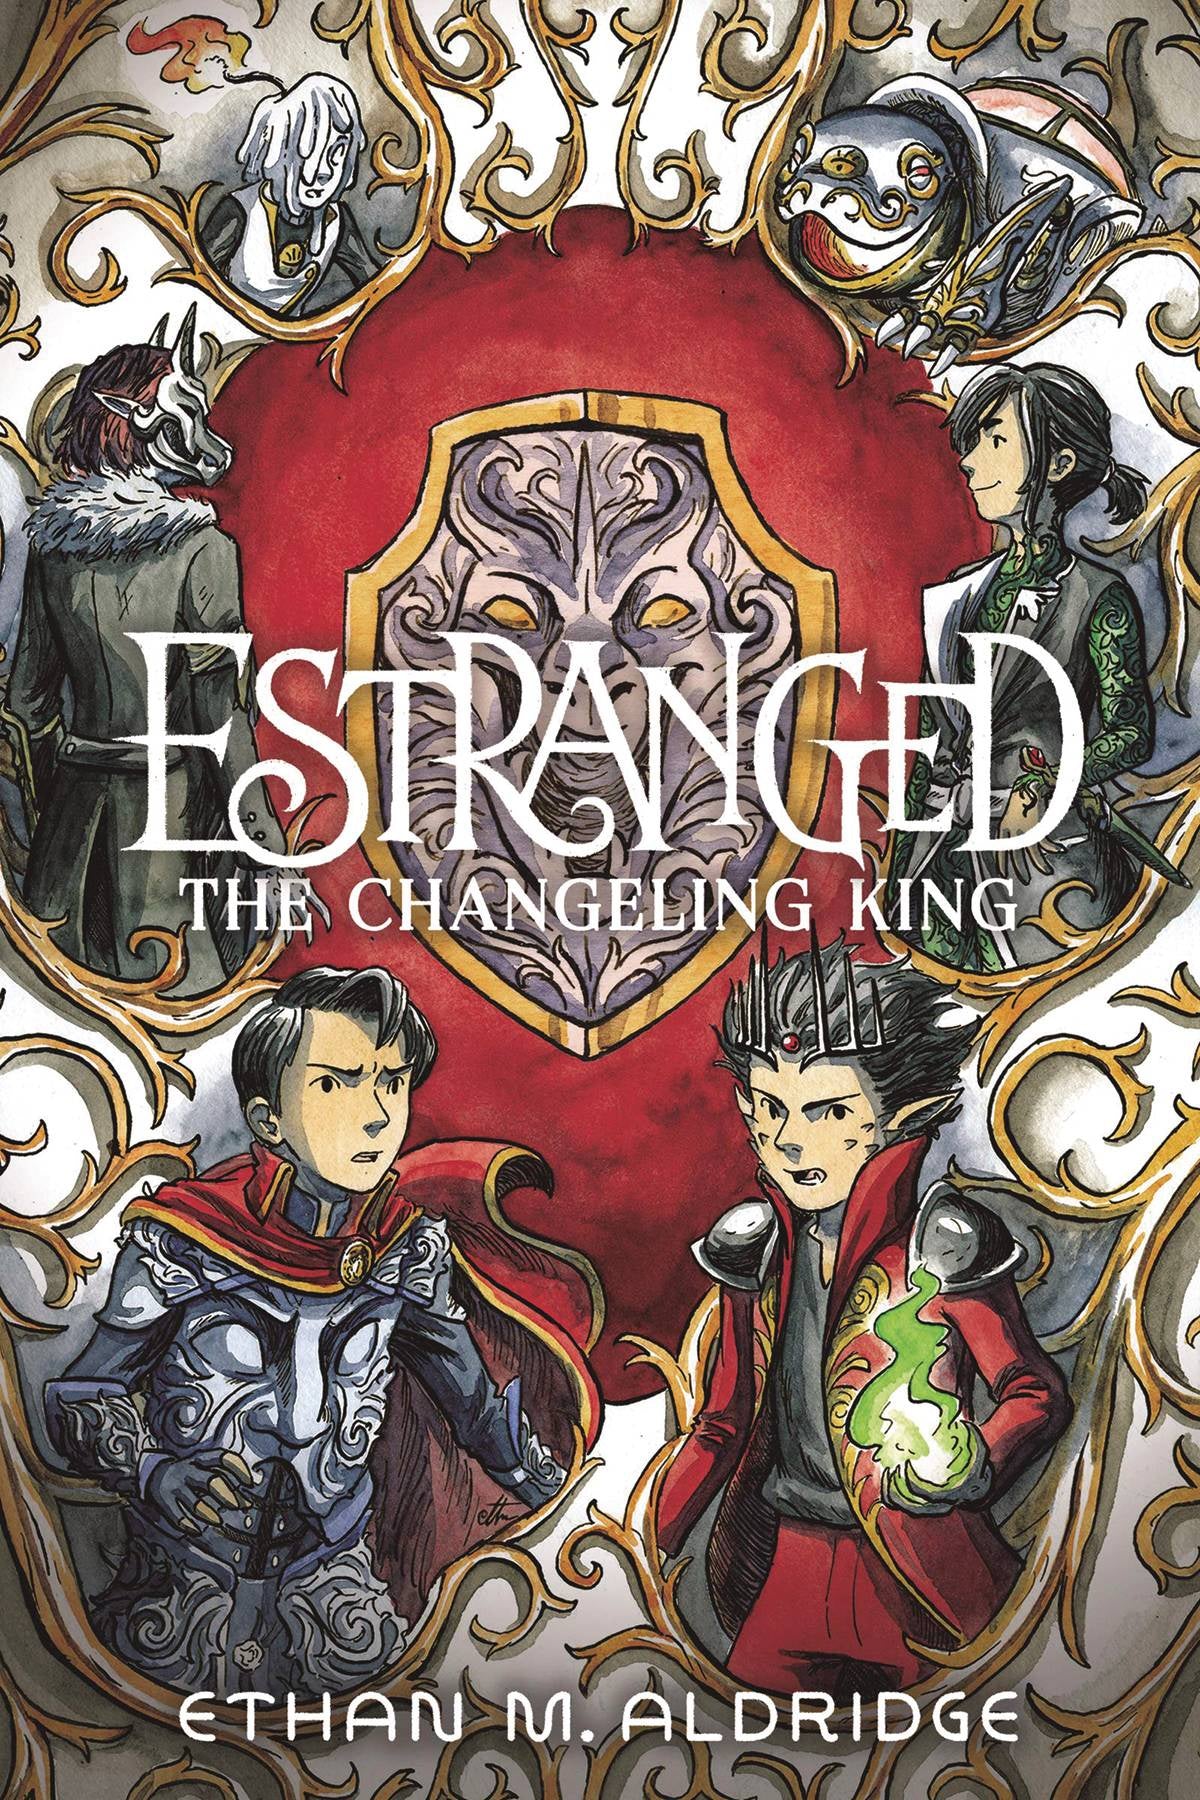 ESTRANGED VOLUME 02 CHANGELING KING